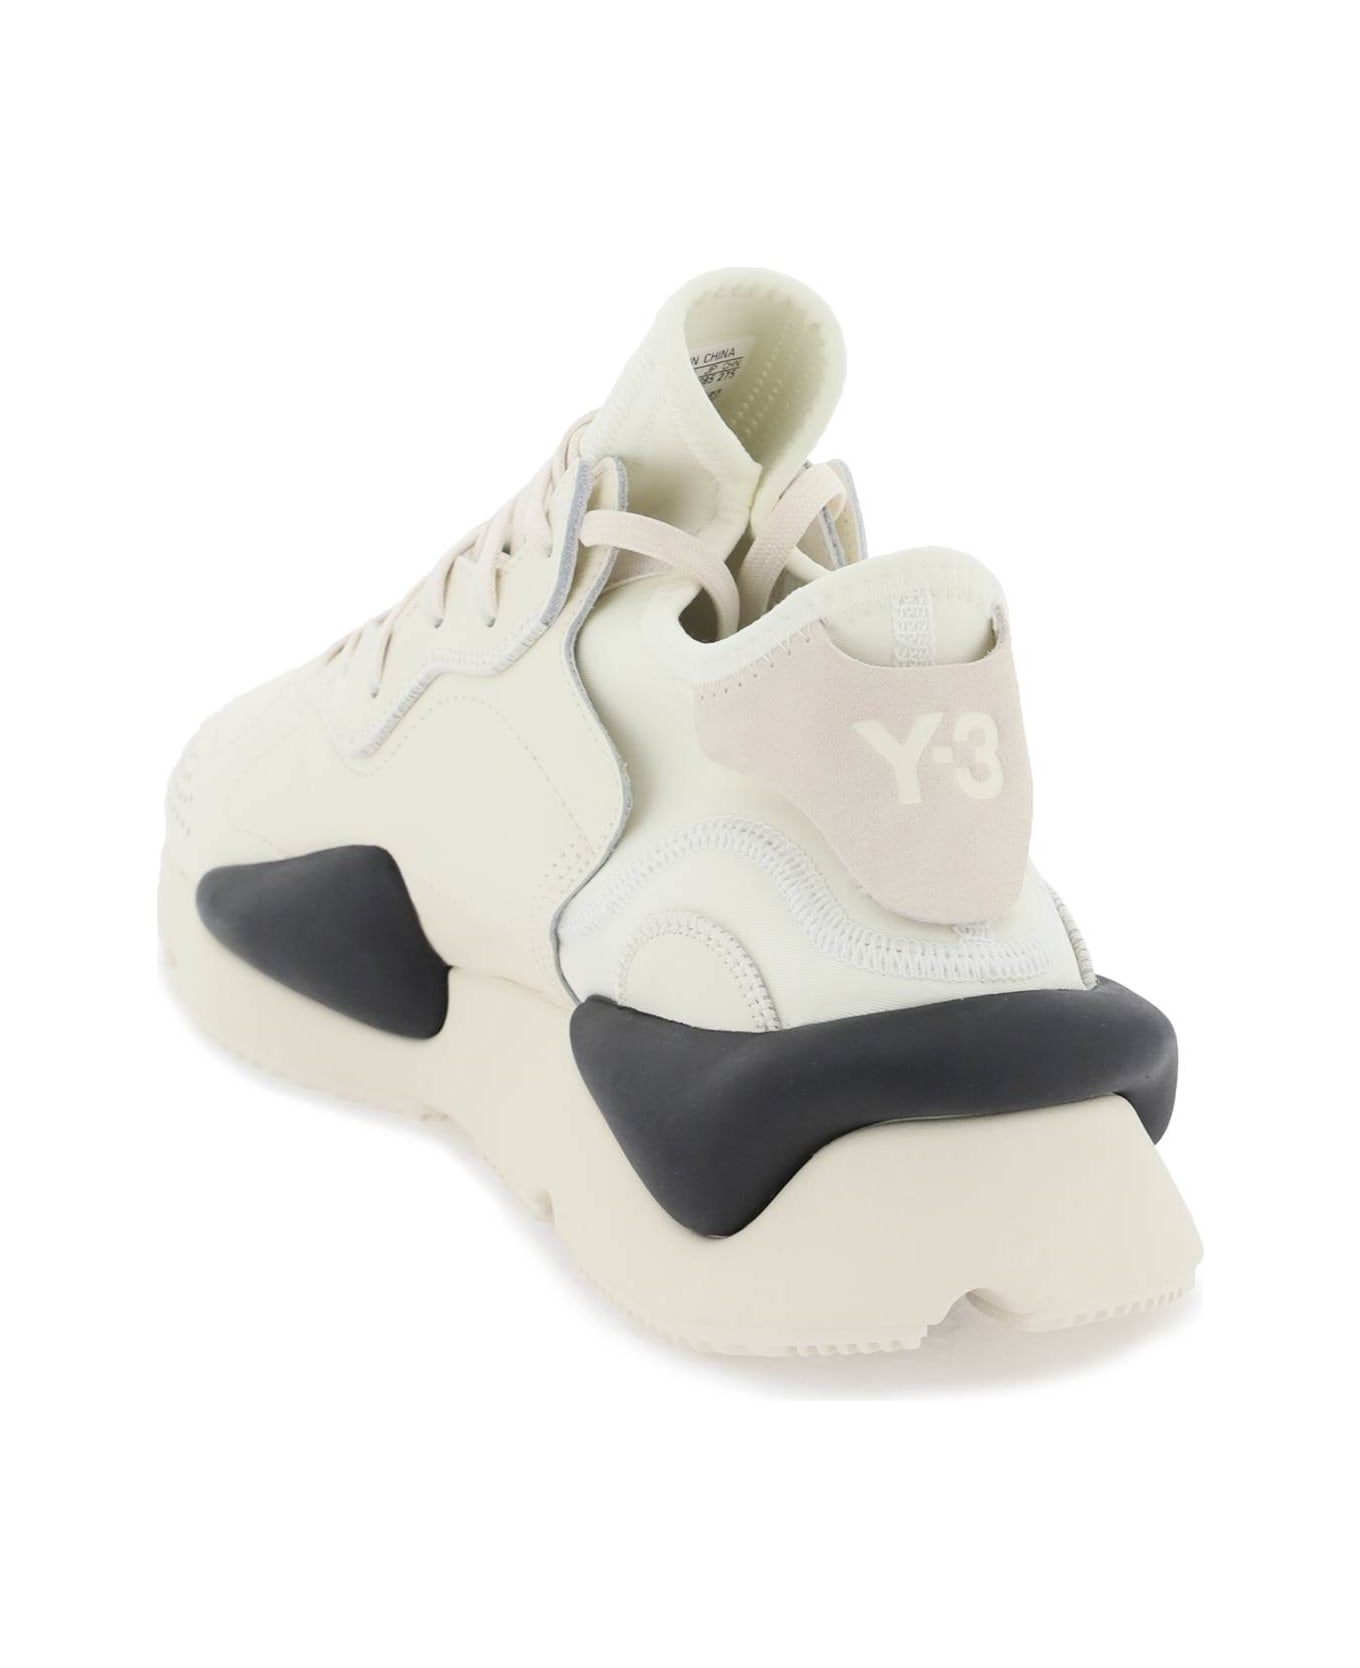 Y-3 Kaiwa Sneakers - CREWHT OWHITE BLACK (White)